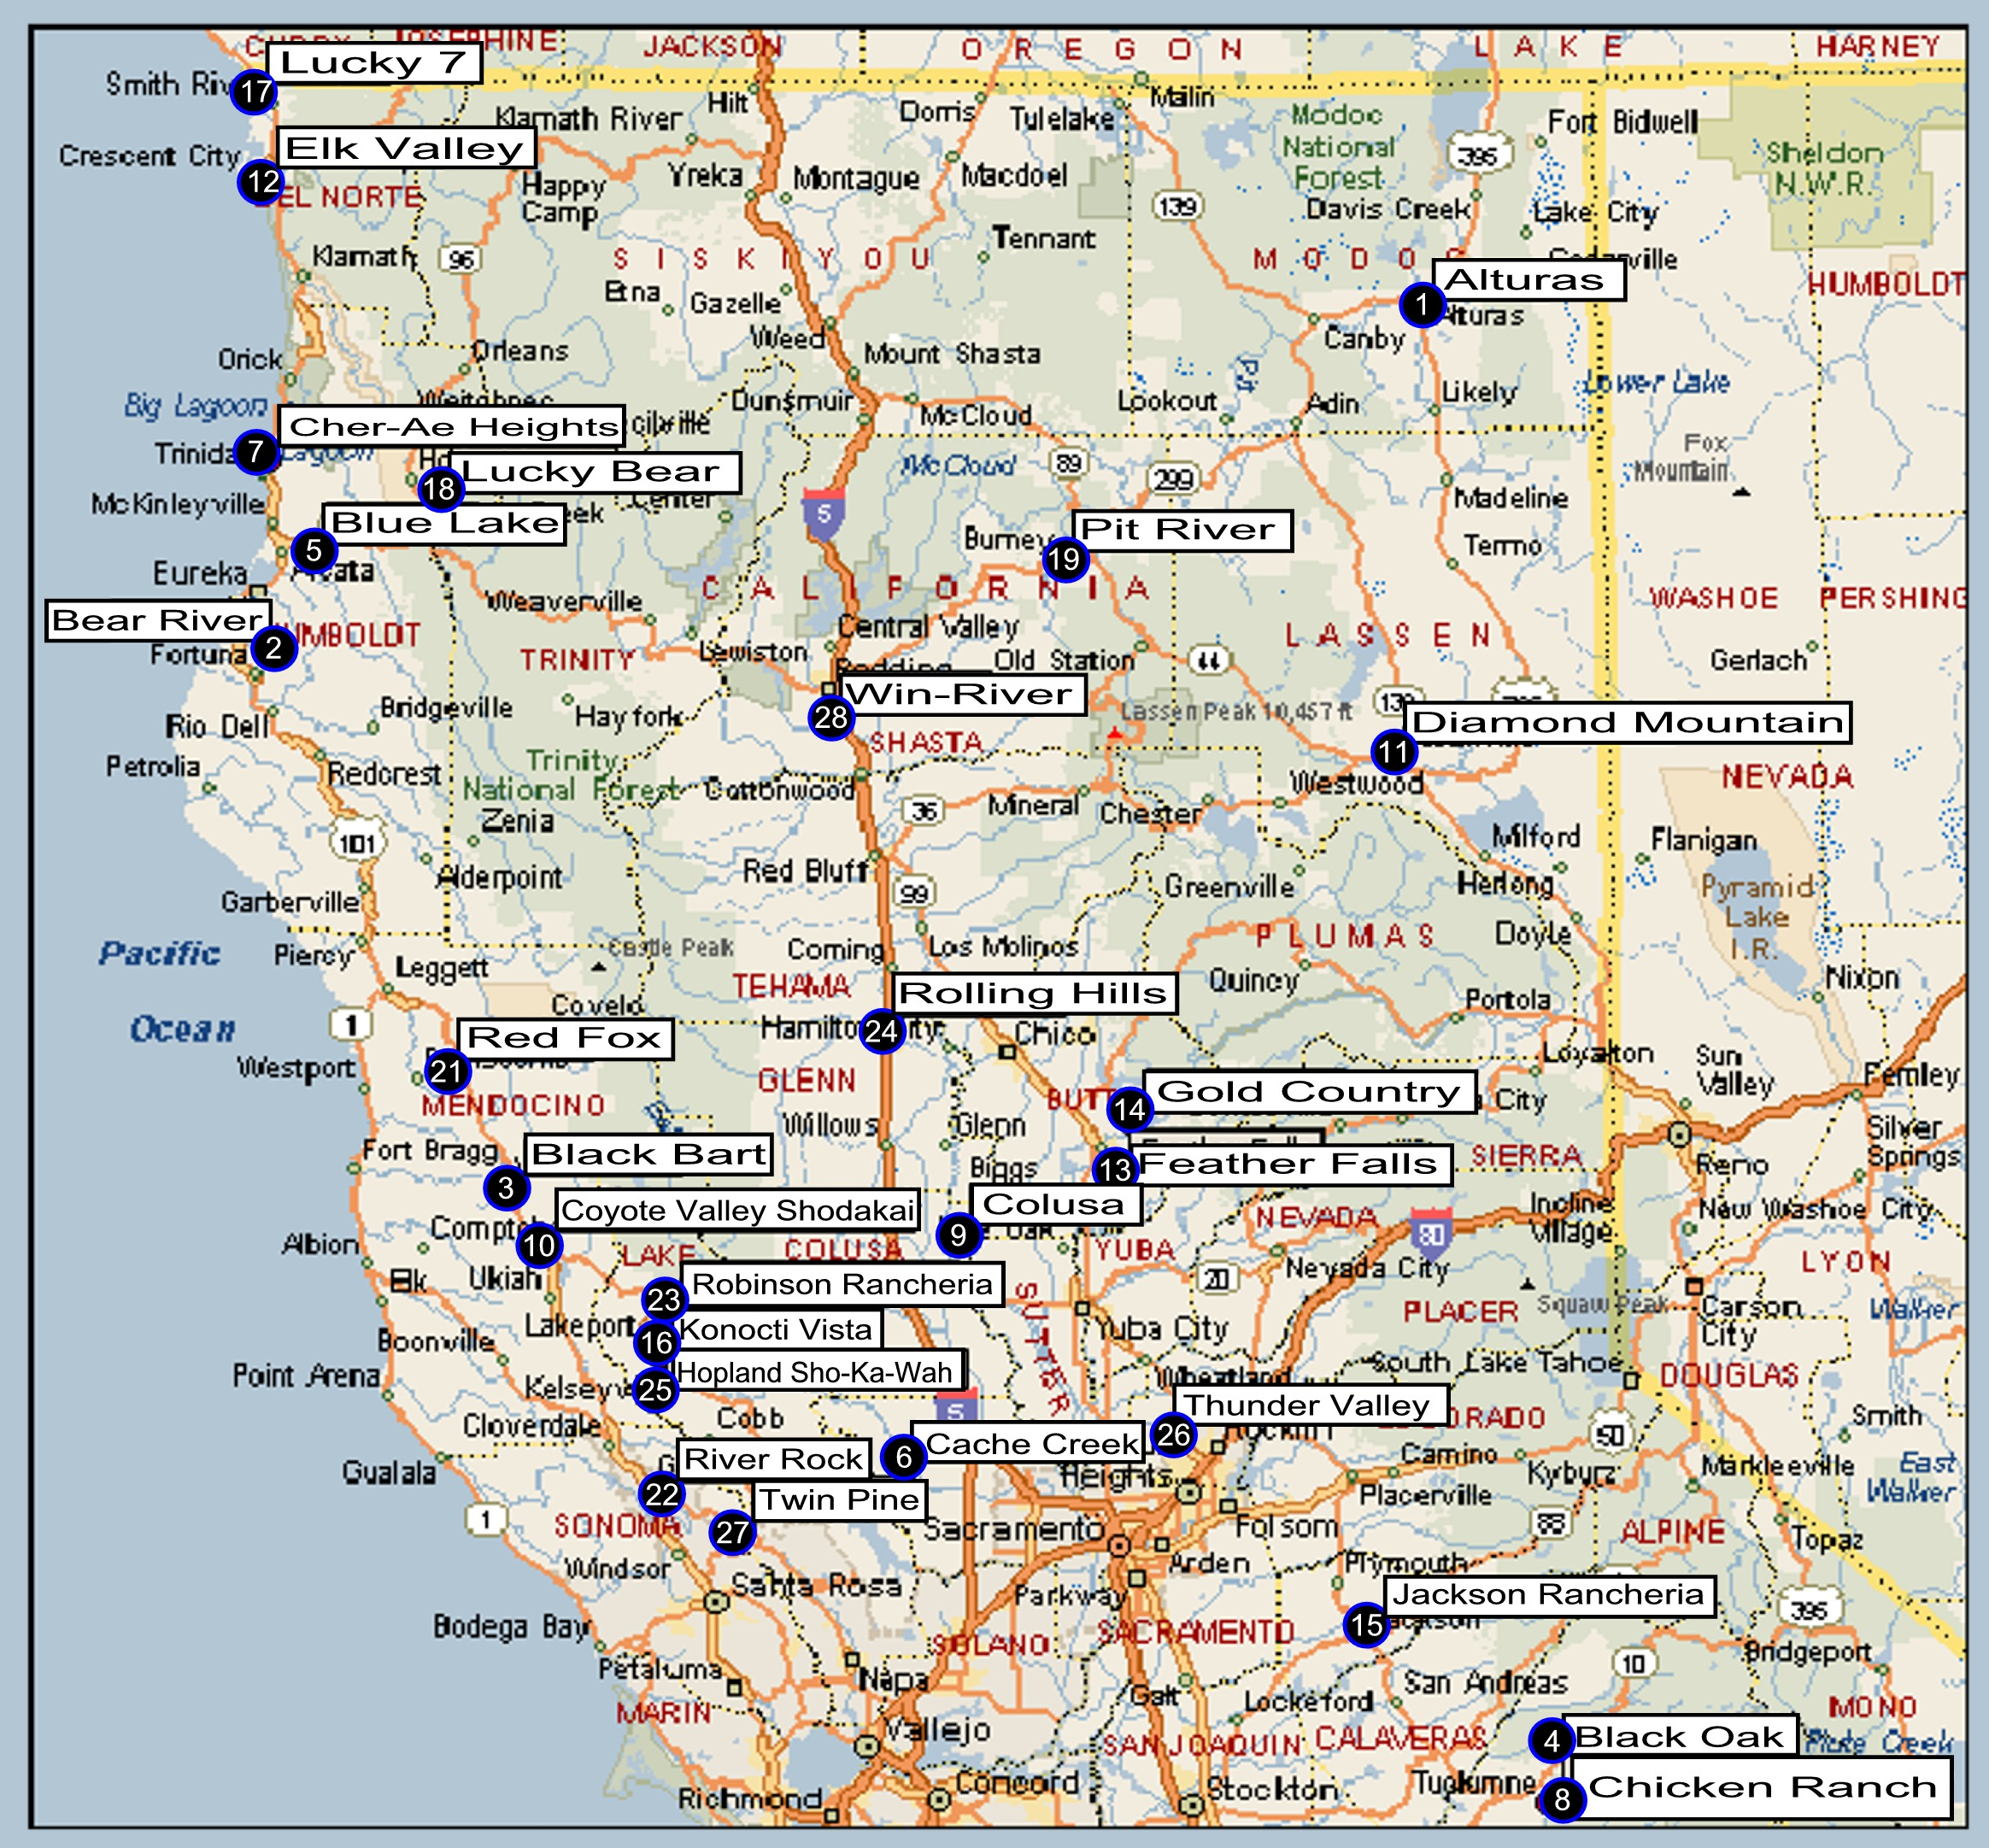 Norcal Map Google Maps California Indian Casinos California Map - California Indian Casinos Map